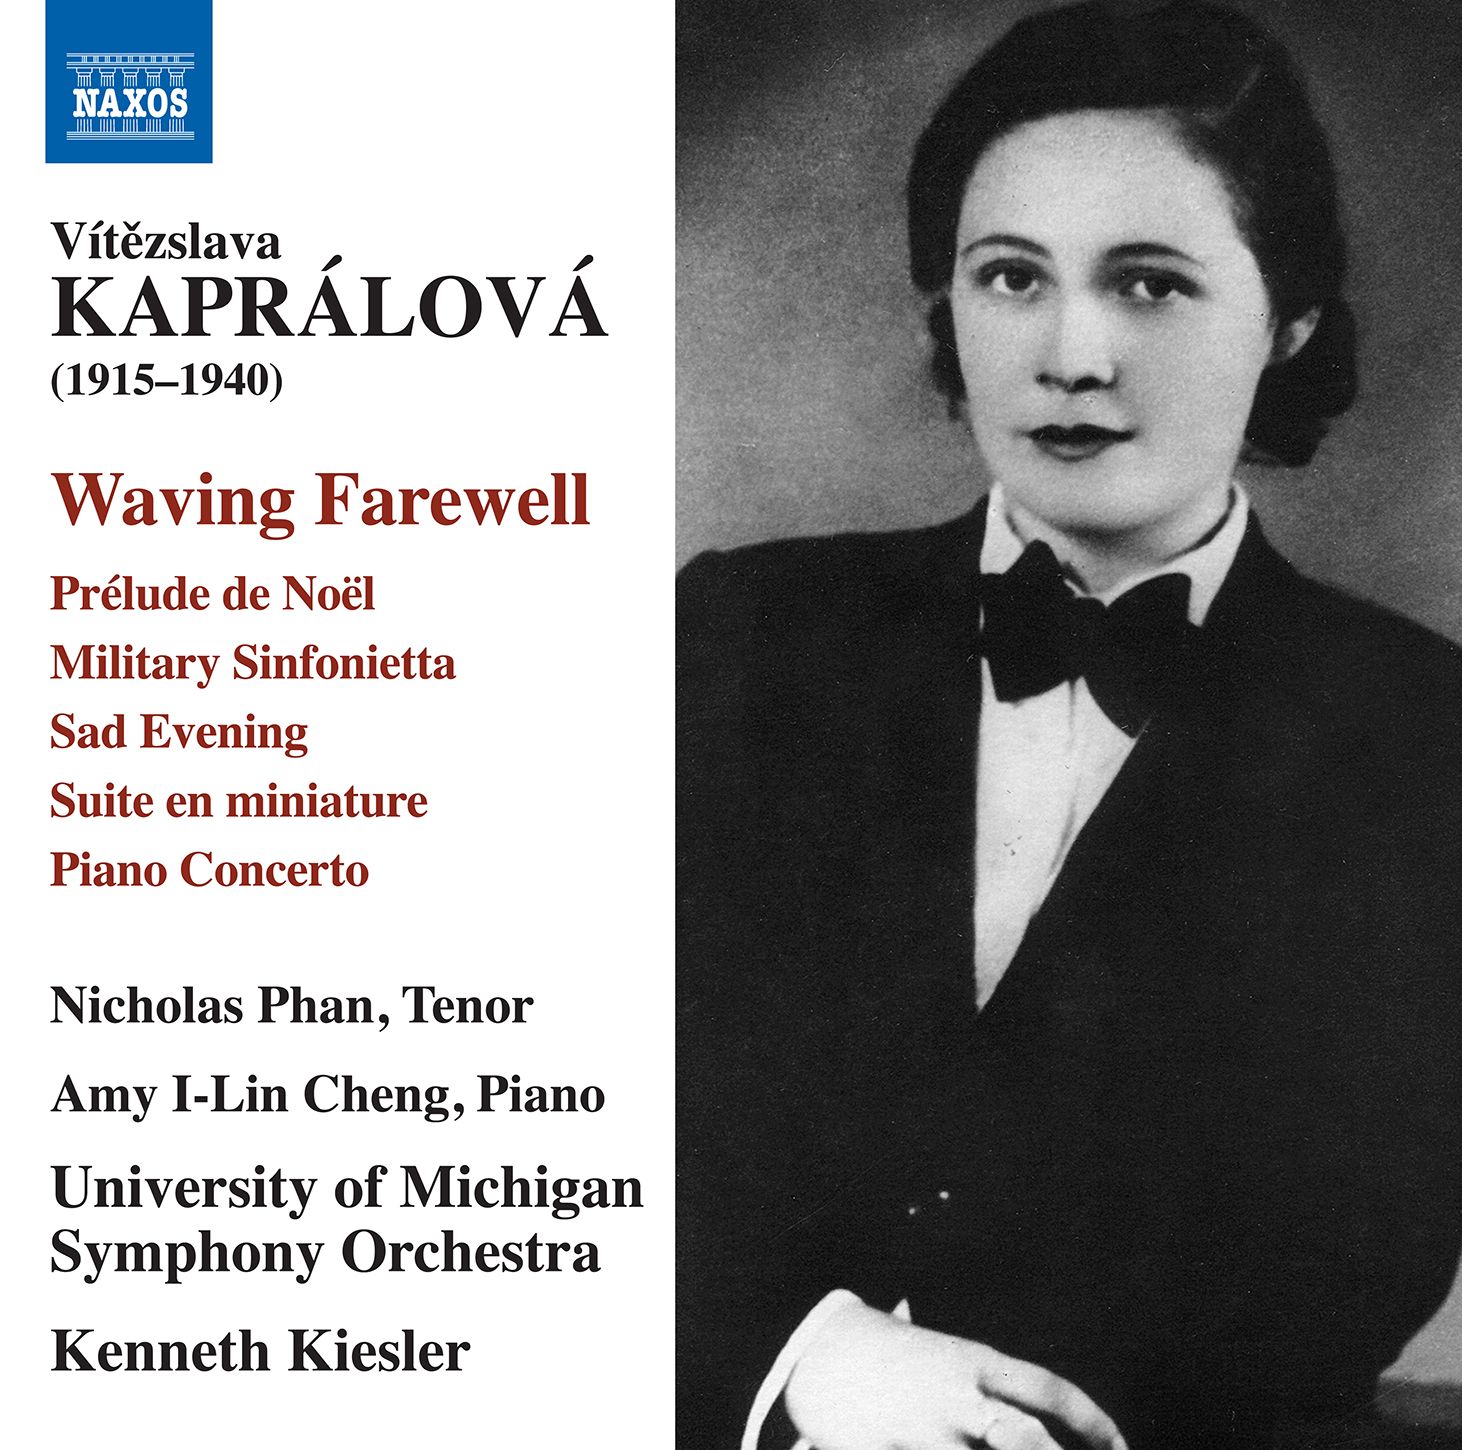 The Vibrant Music of Vítězslava Kaprálová